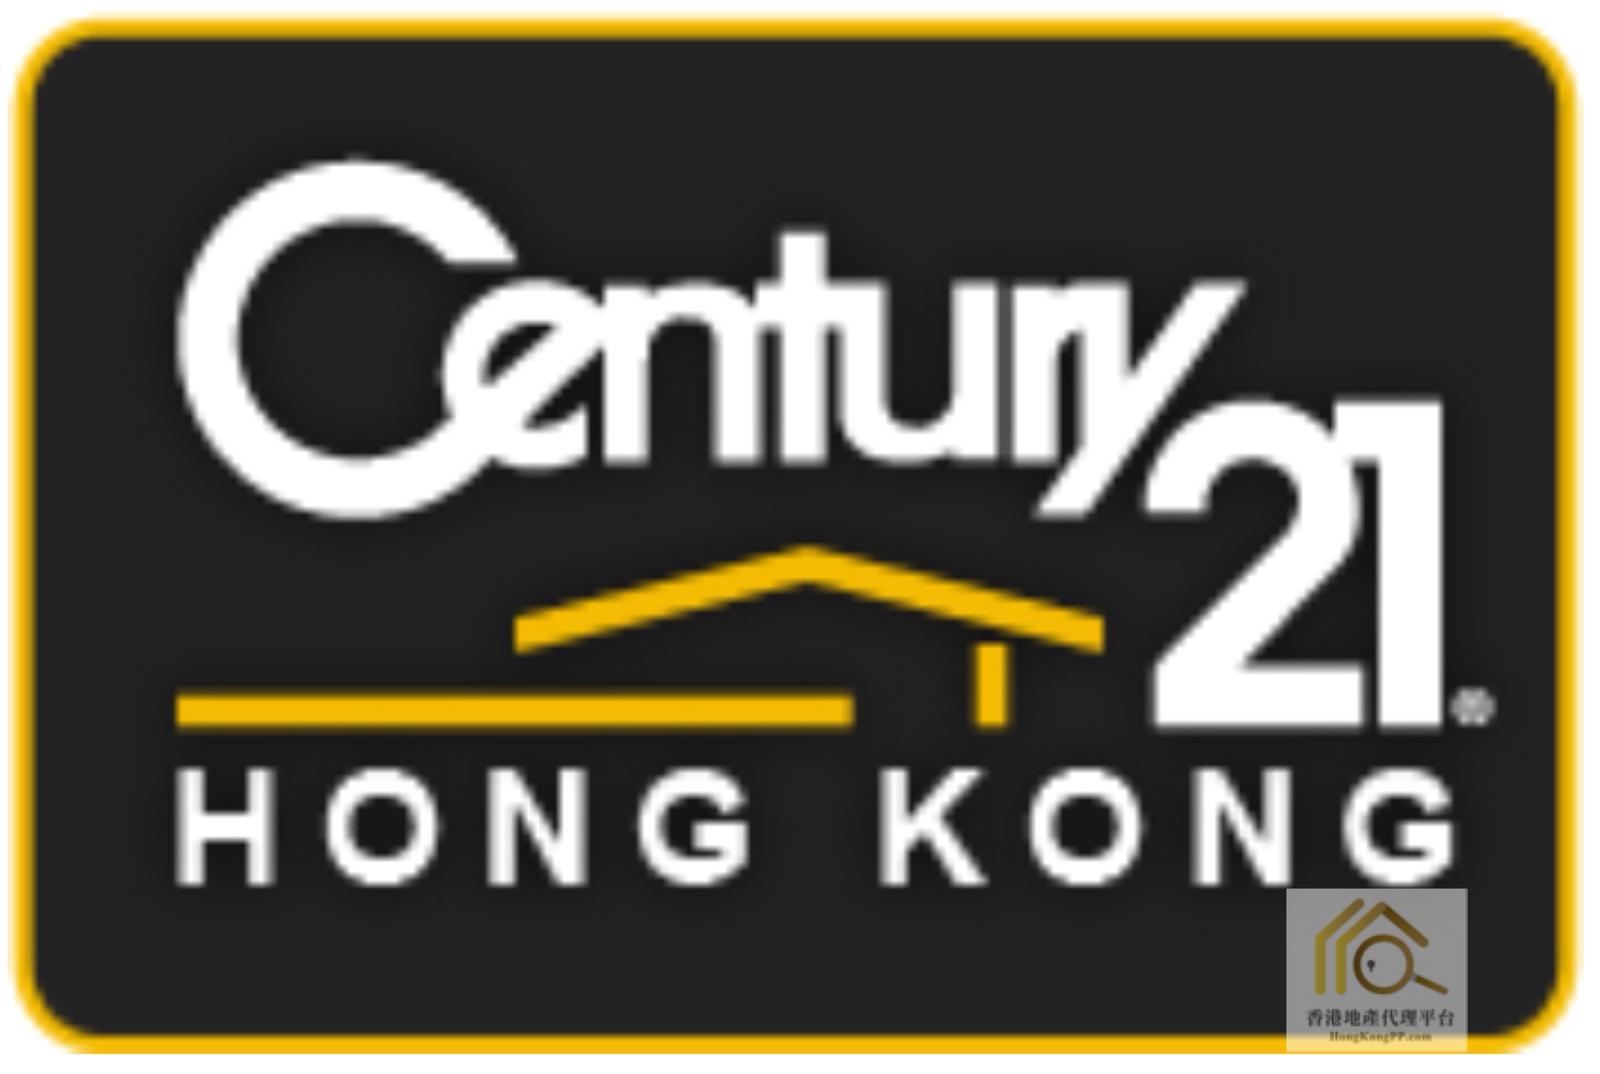 地產代理公司: 世紀21 世紀21亞洲地產有限公司